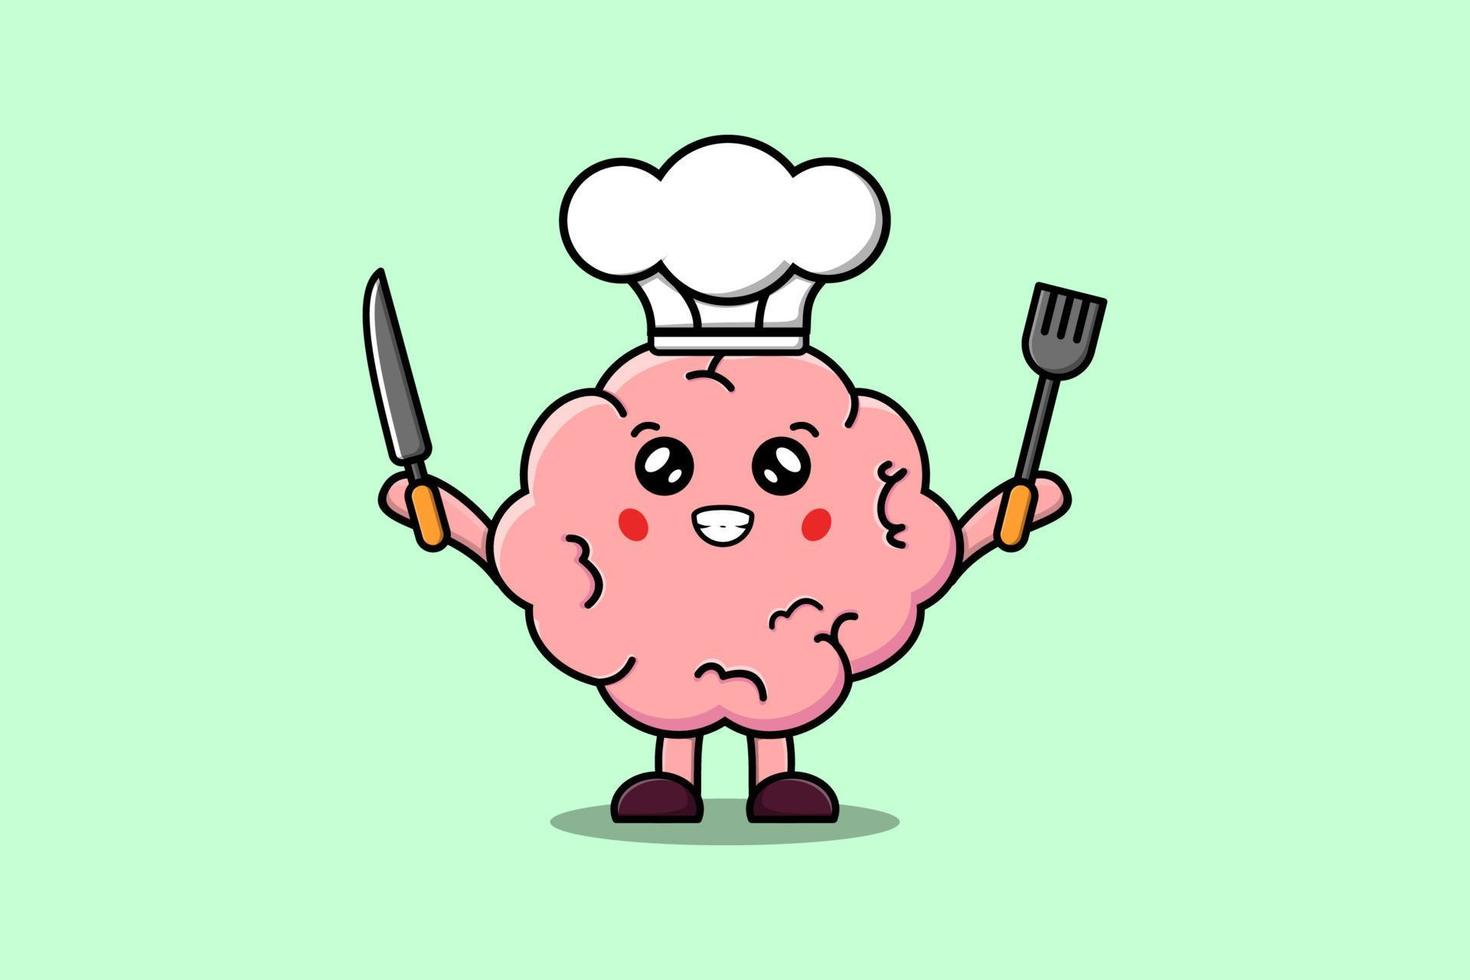 schattig tekenfilm hersenen chef Holding mes en vork vector